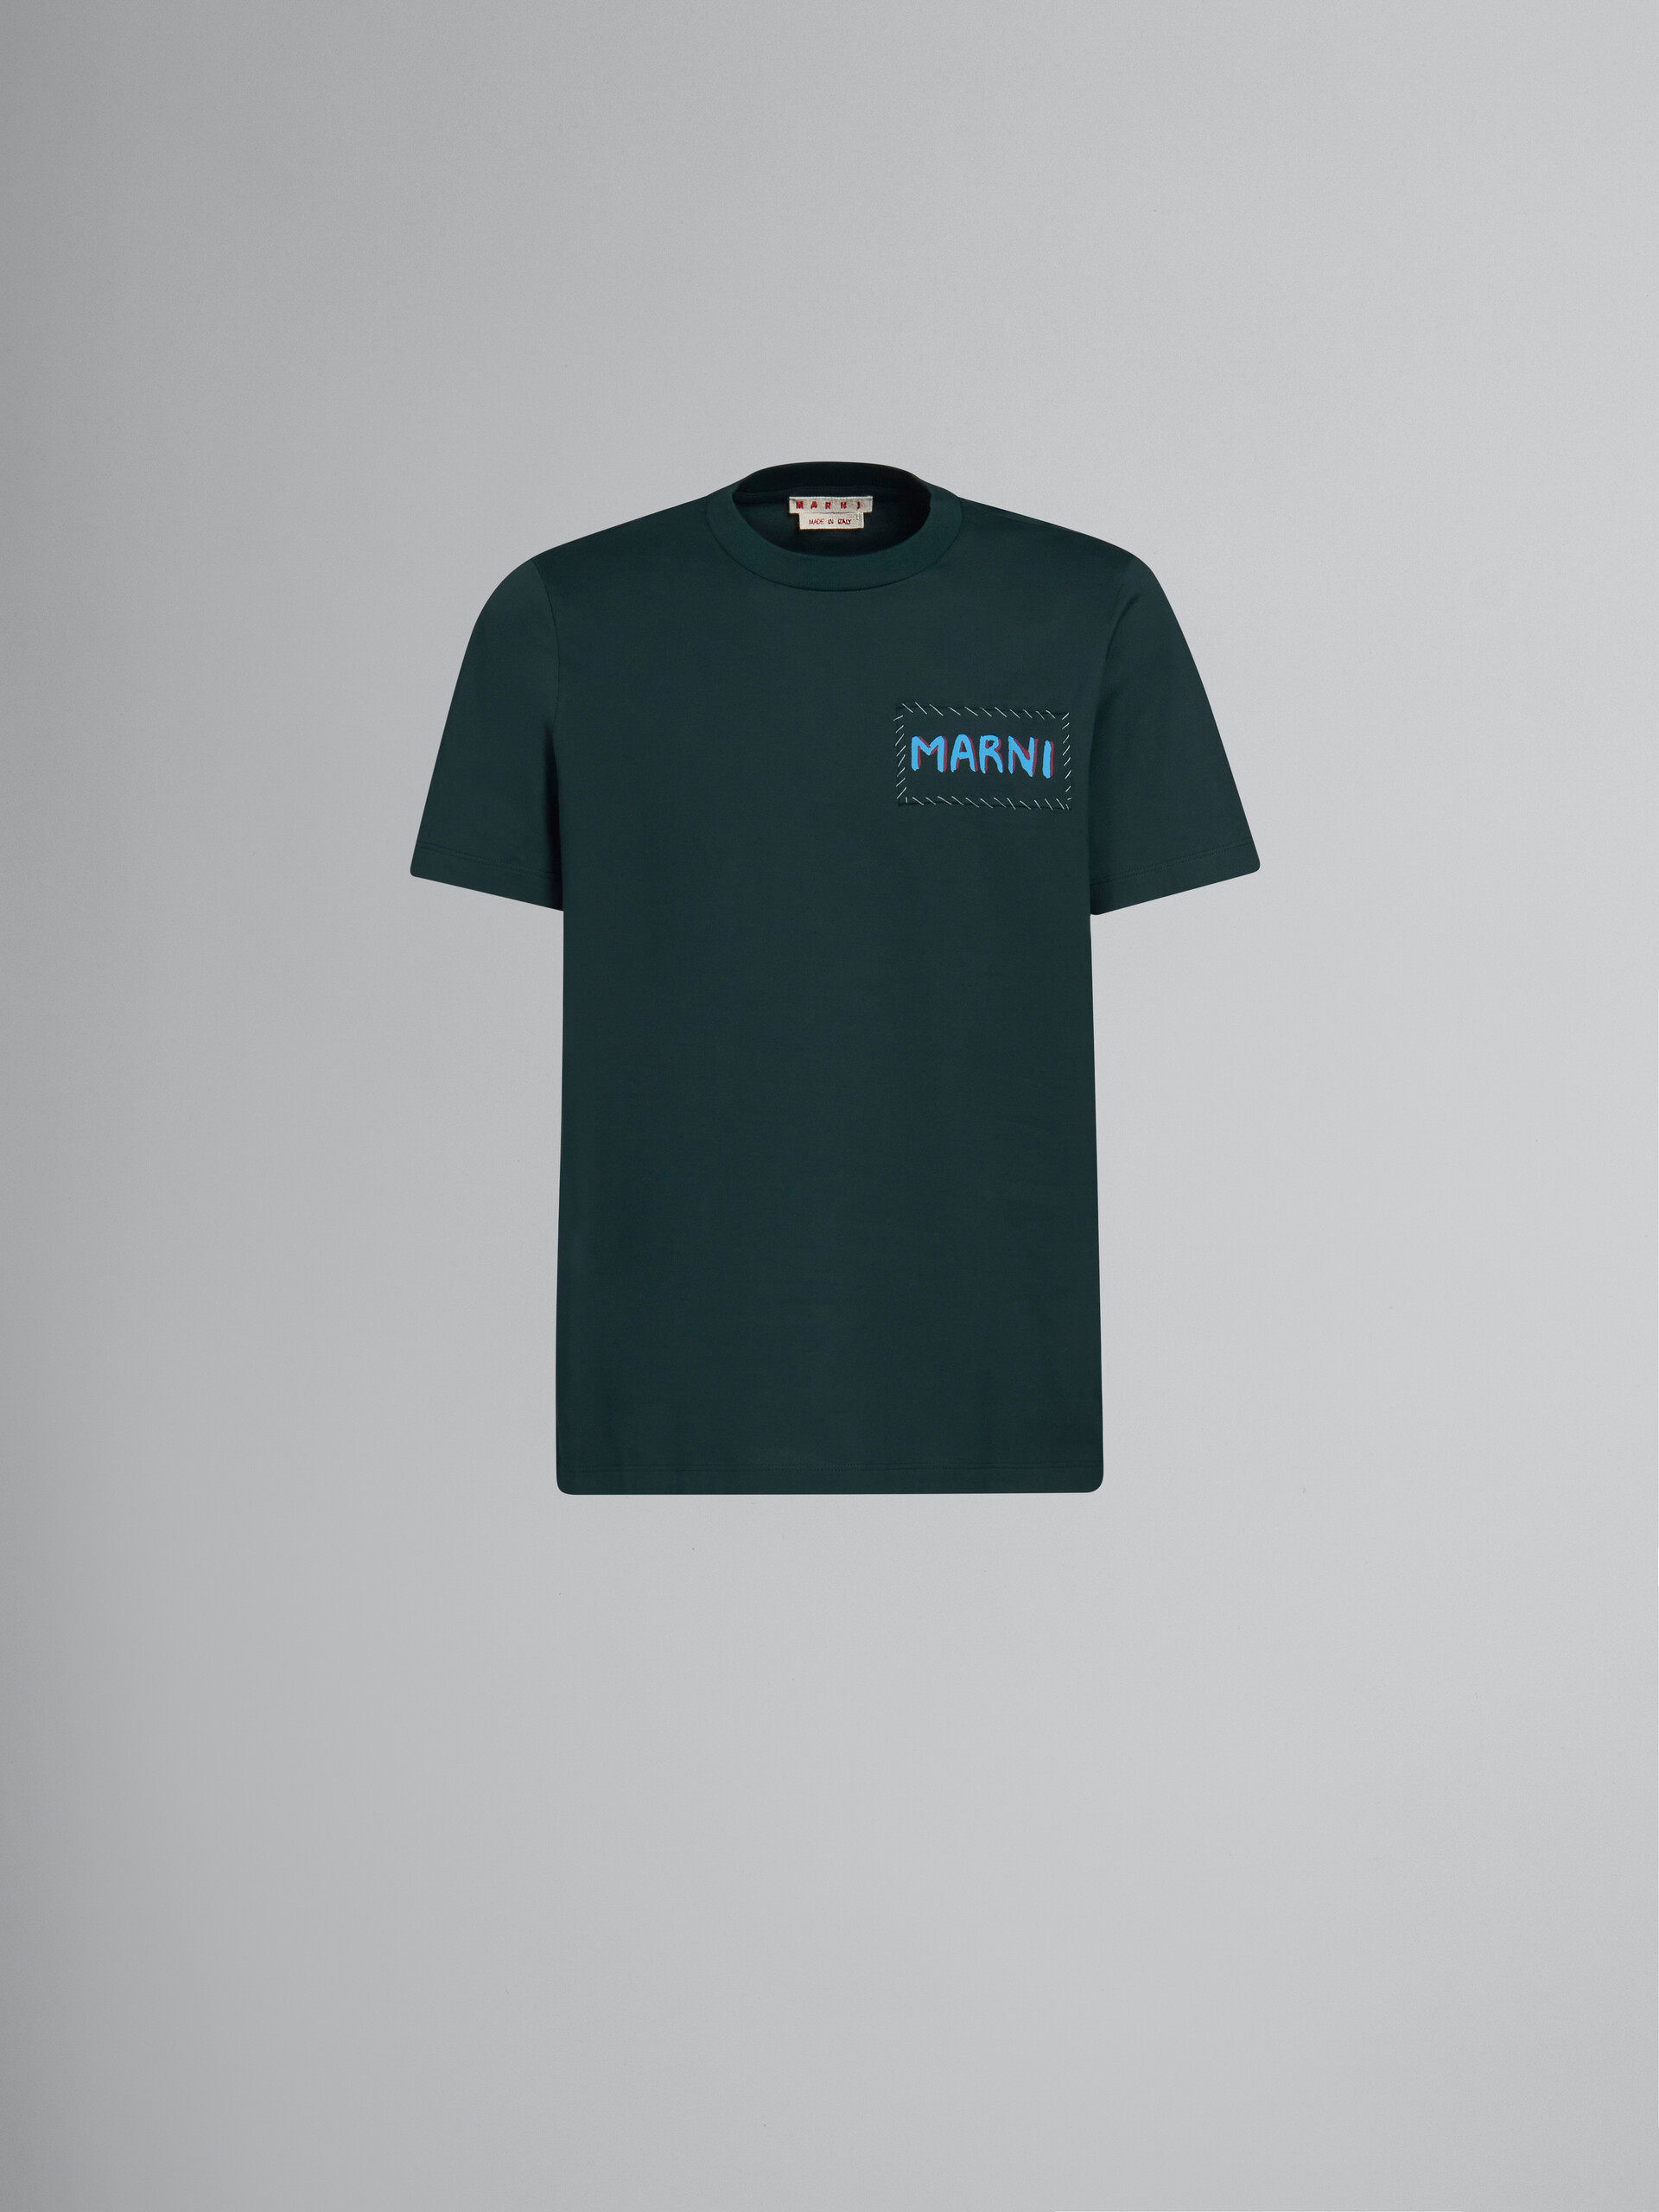 Camiseta verde de algodón ecológico con parche Marni - Camisetas - Image 1